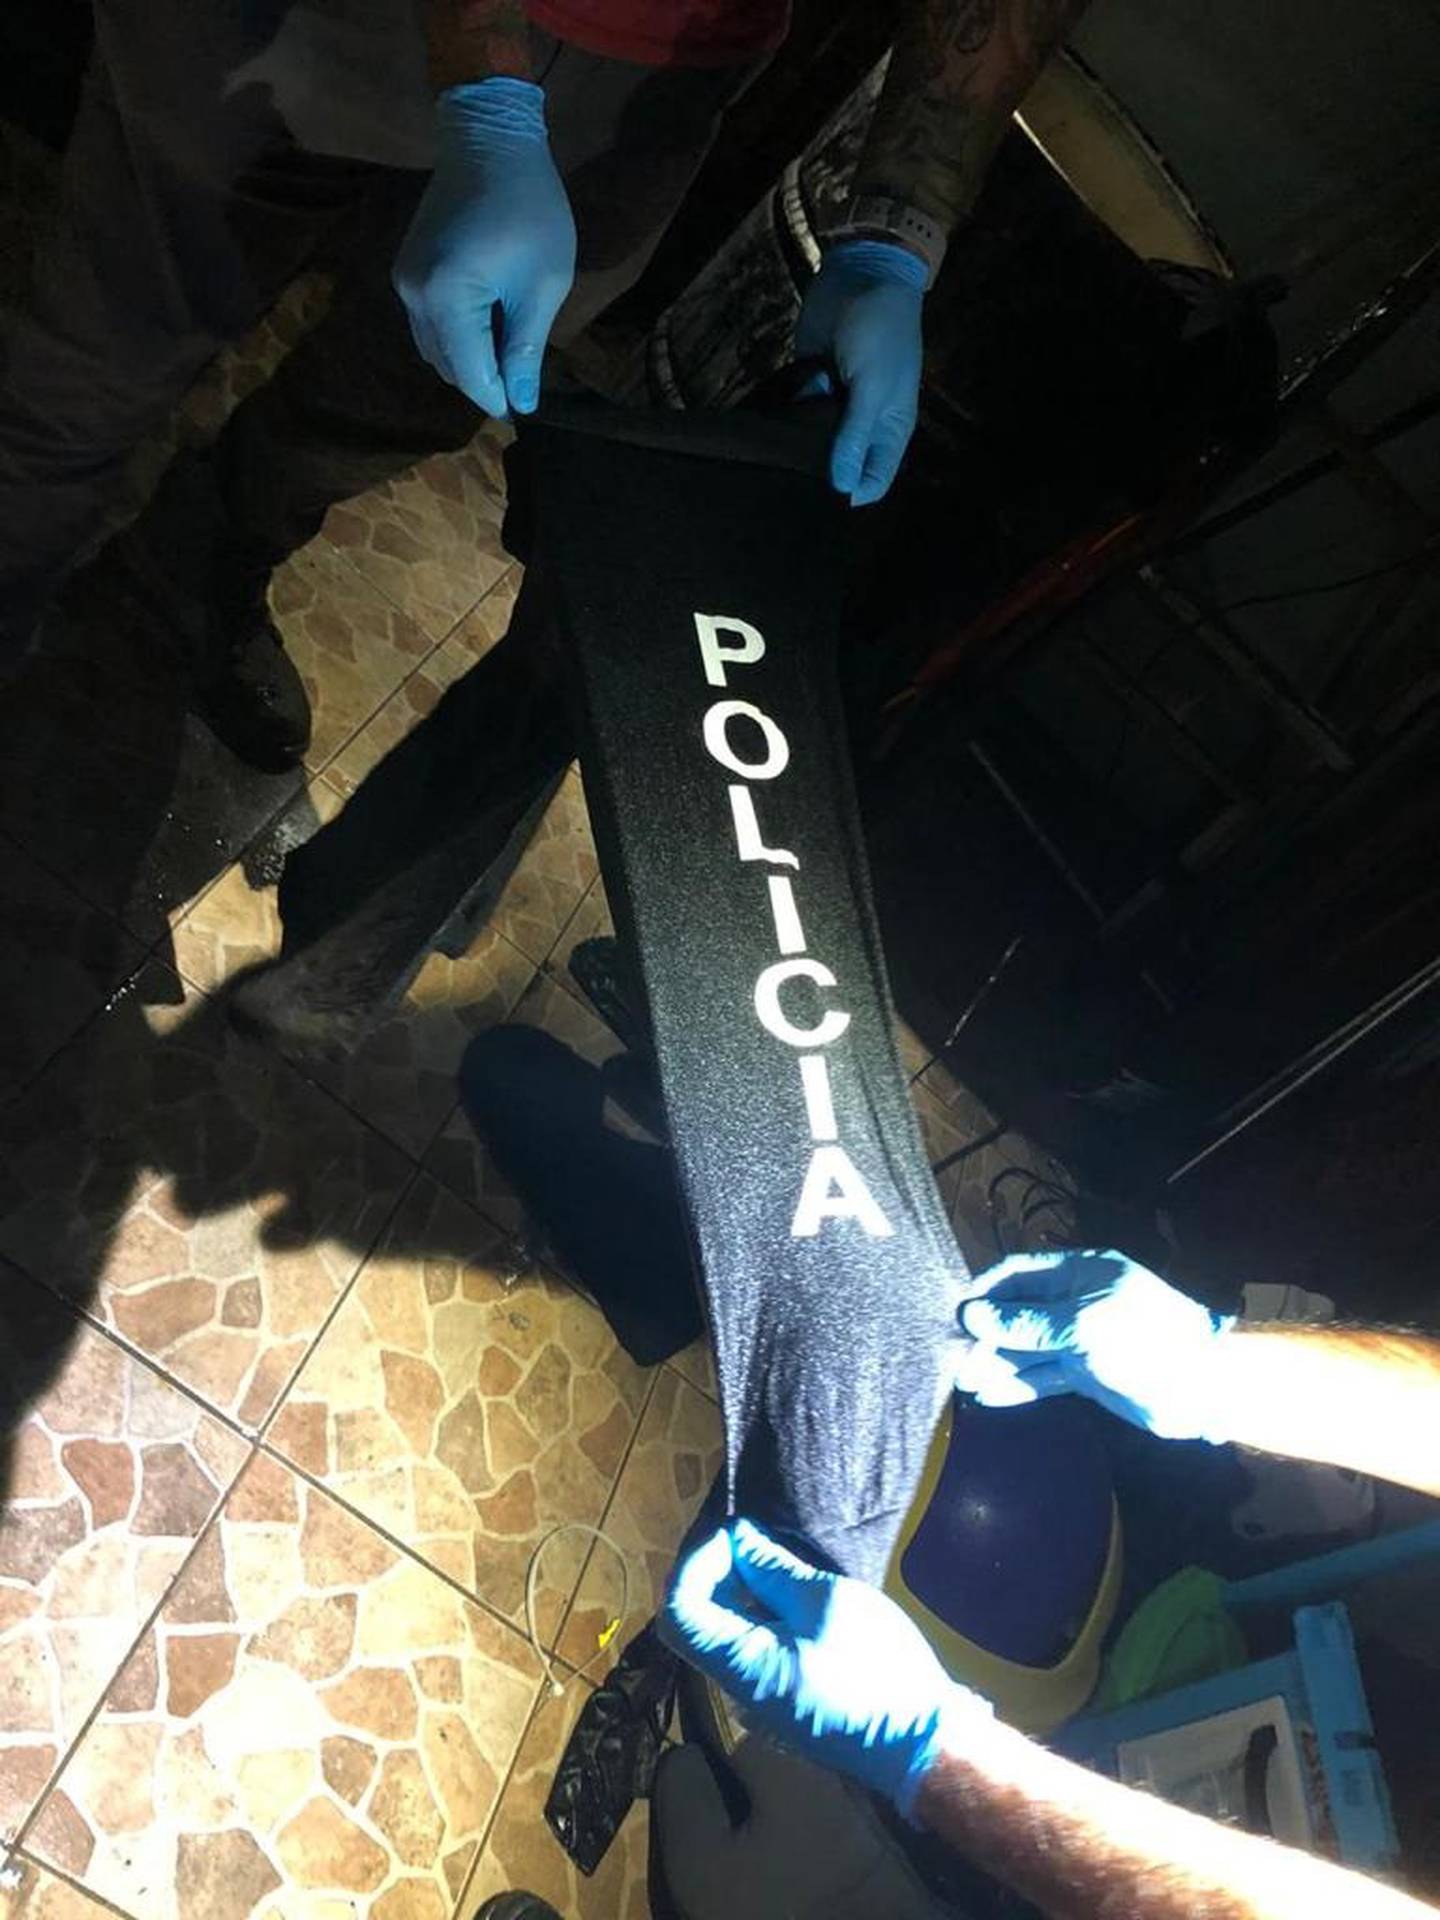 OIJ detienen a sujeto sospechoso de narcotráfico y 8 sujetos con chalecos rotulados con logos de OIJ y PCD. Foto OIJ.